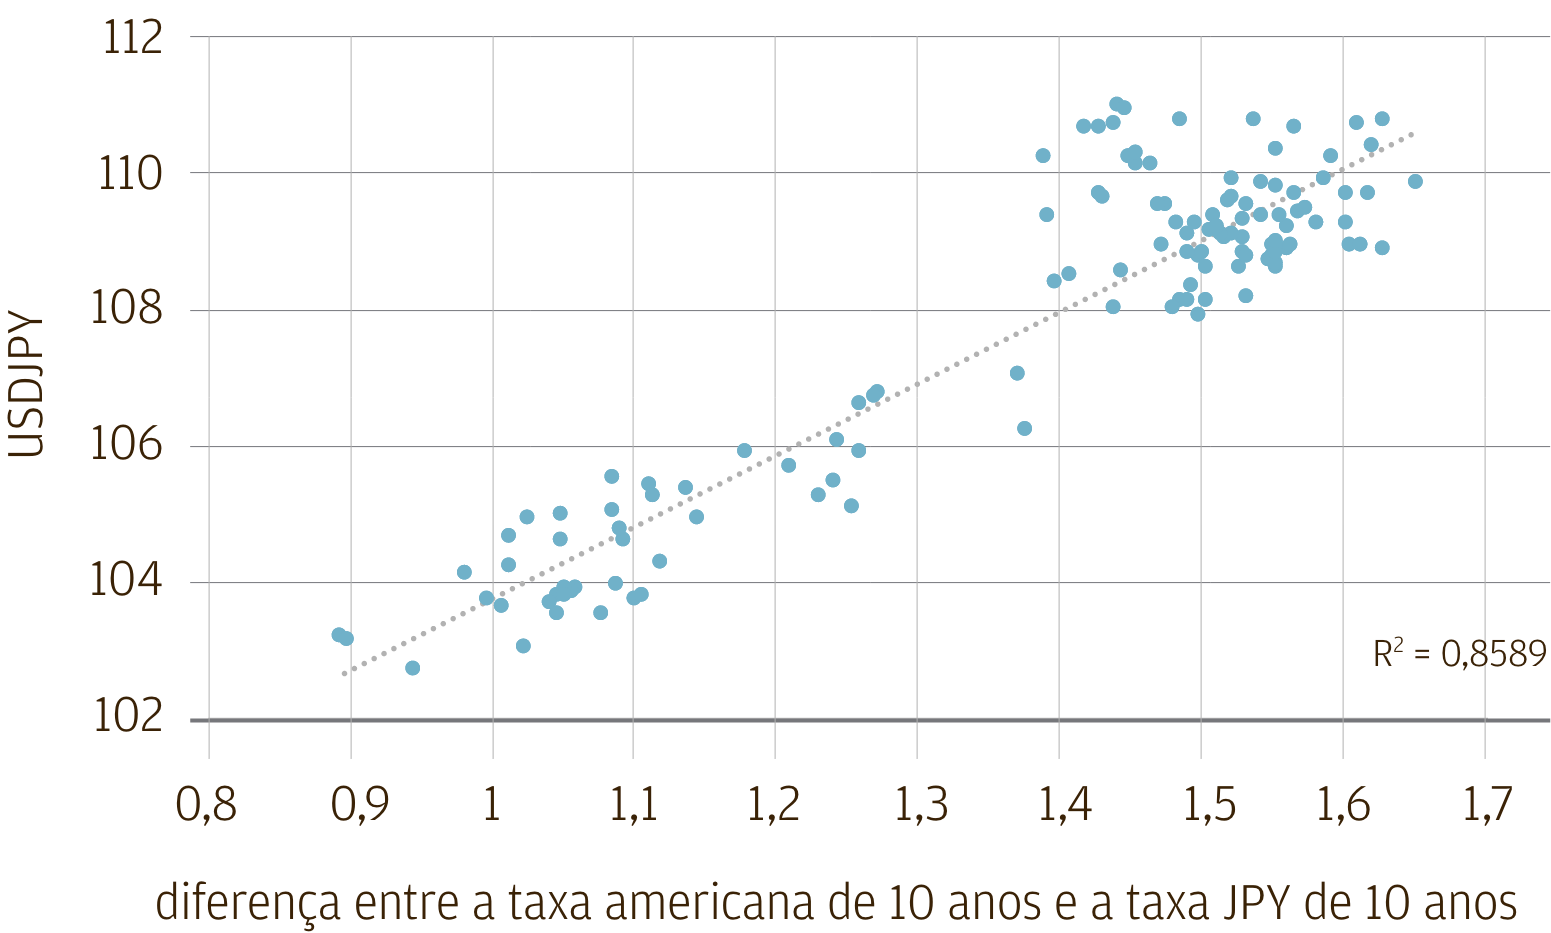 Este gráfico mostra a relação entre o nível da taxa de câmbio entre o dólar americano e o iene japonês e o spread entre os rendimentos de títulos nominais públicos japoneses e tesouro dos EUA de 10 anos, de janeiro de 2021 a junho de 2021. Mostra que os dois têm uma relação muito próxima, com um r-quadrado de 0,86.